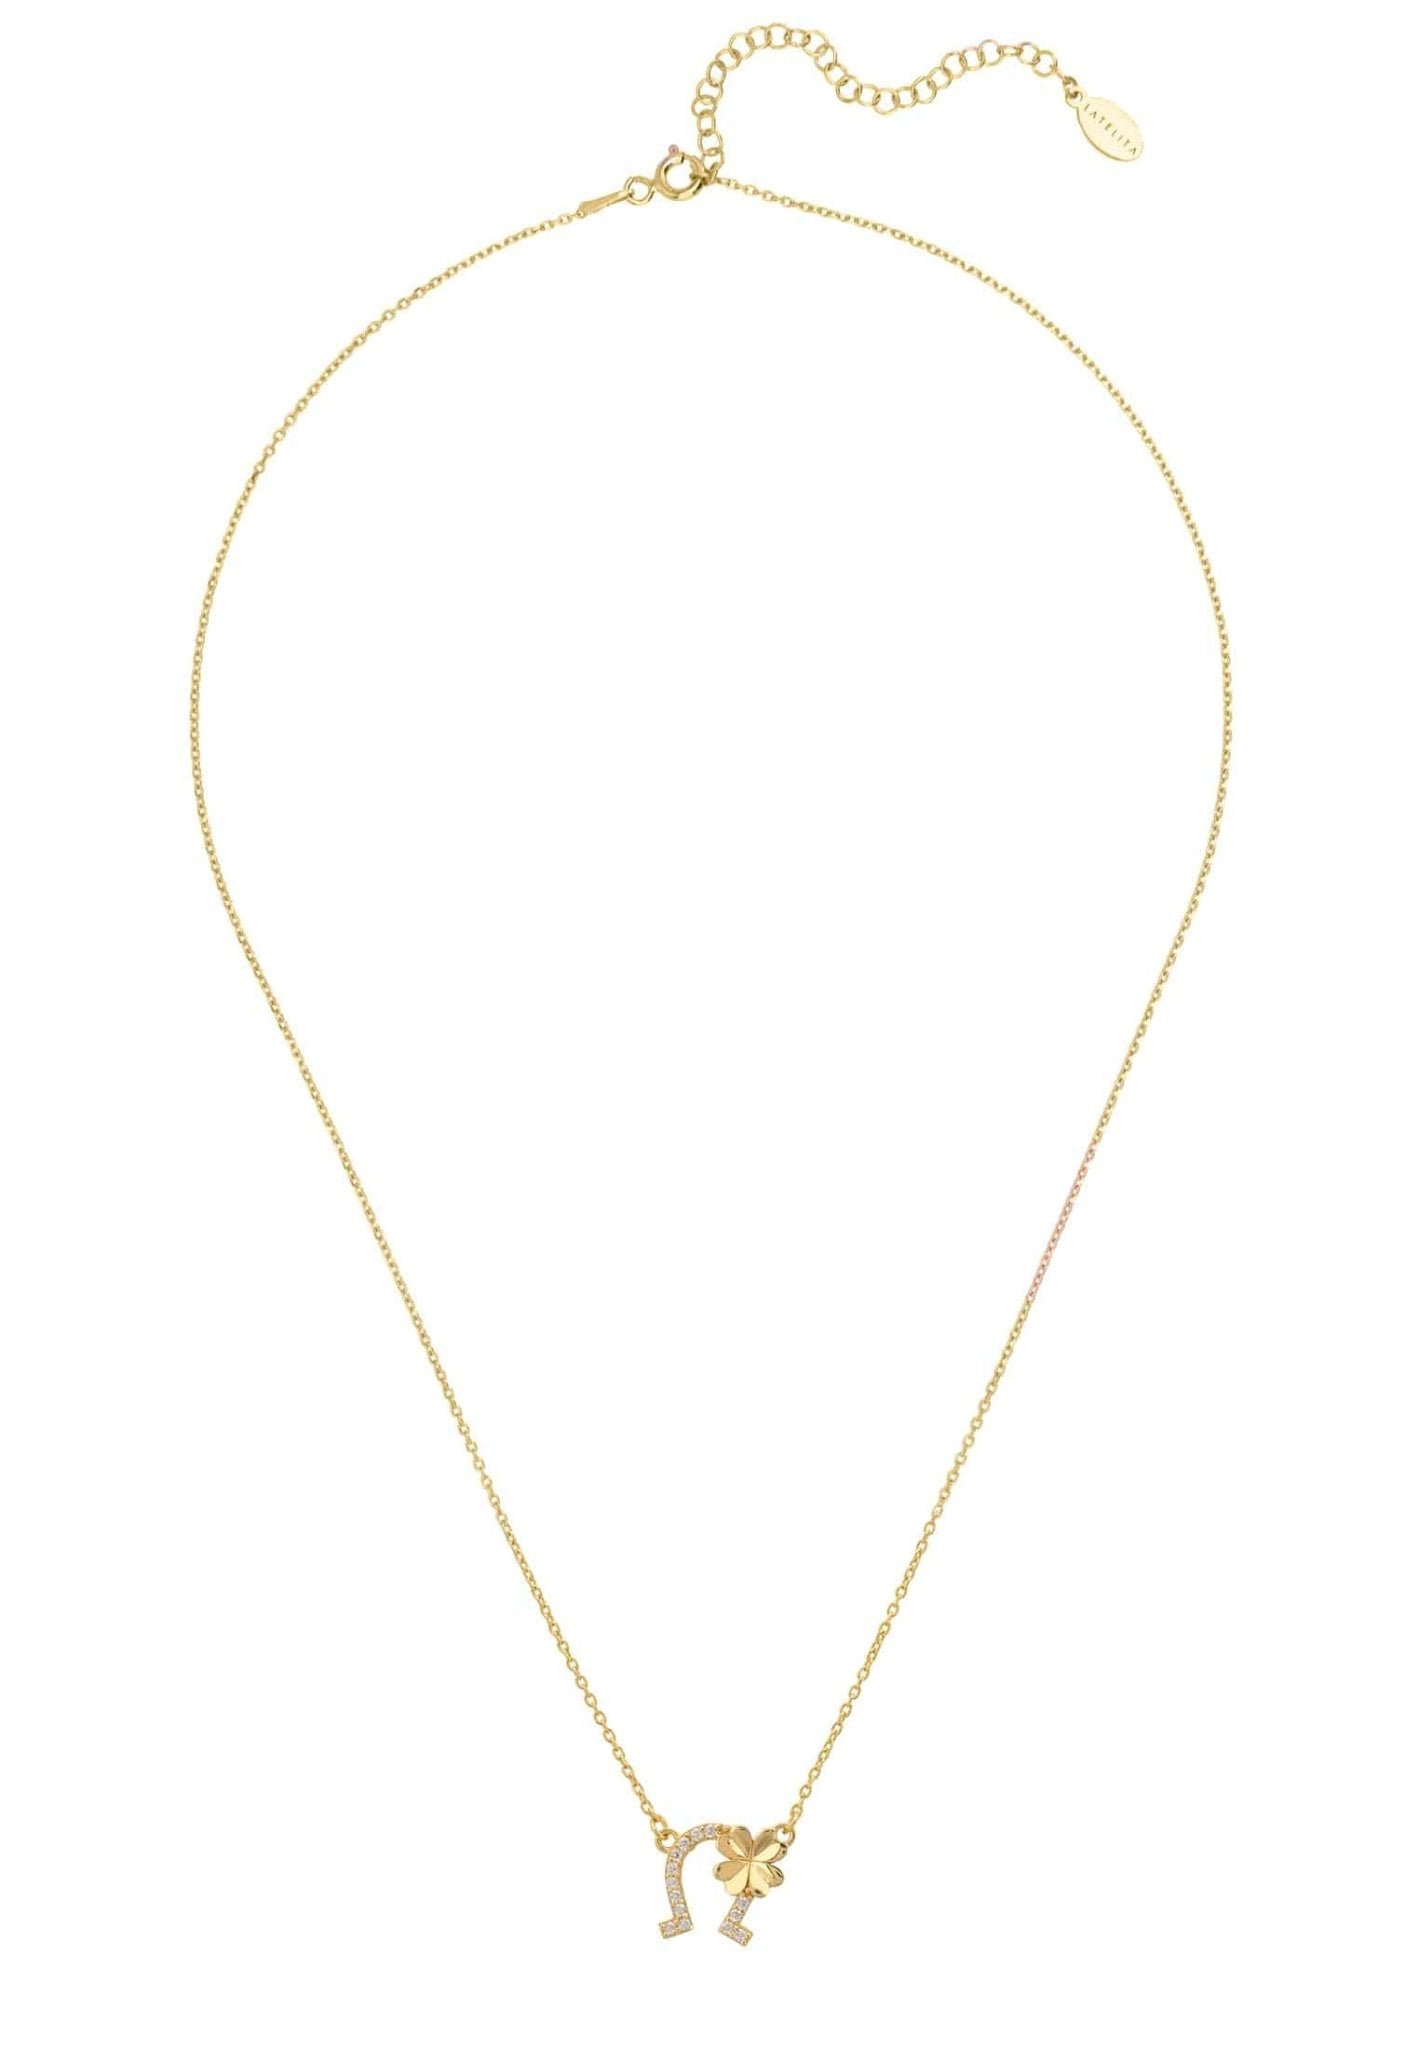 Horseshoe And Shamrock Necklace Gold - LATELITA Necklaces